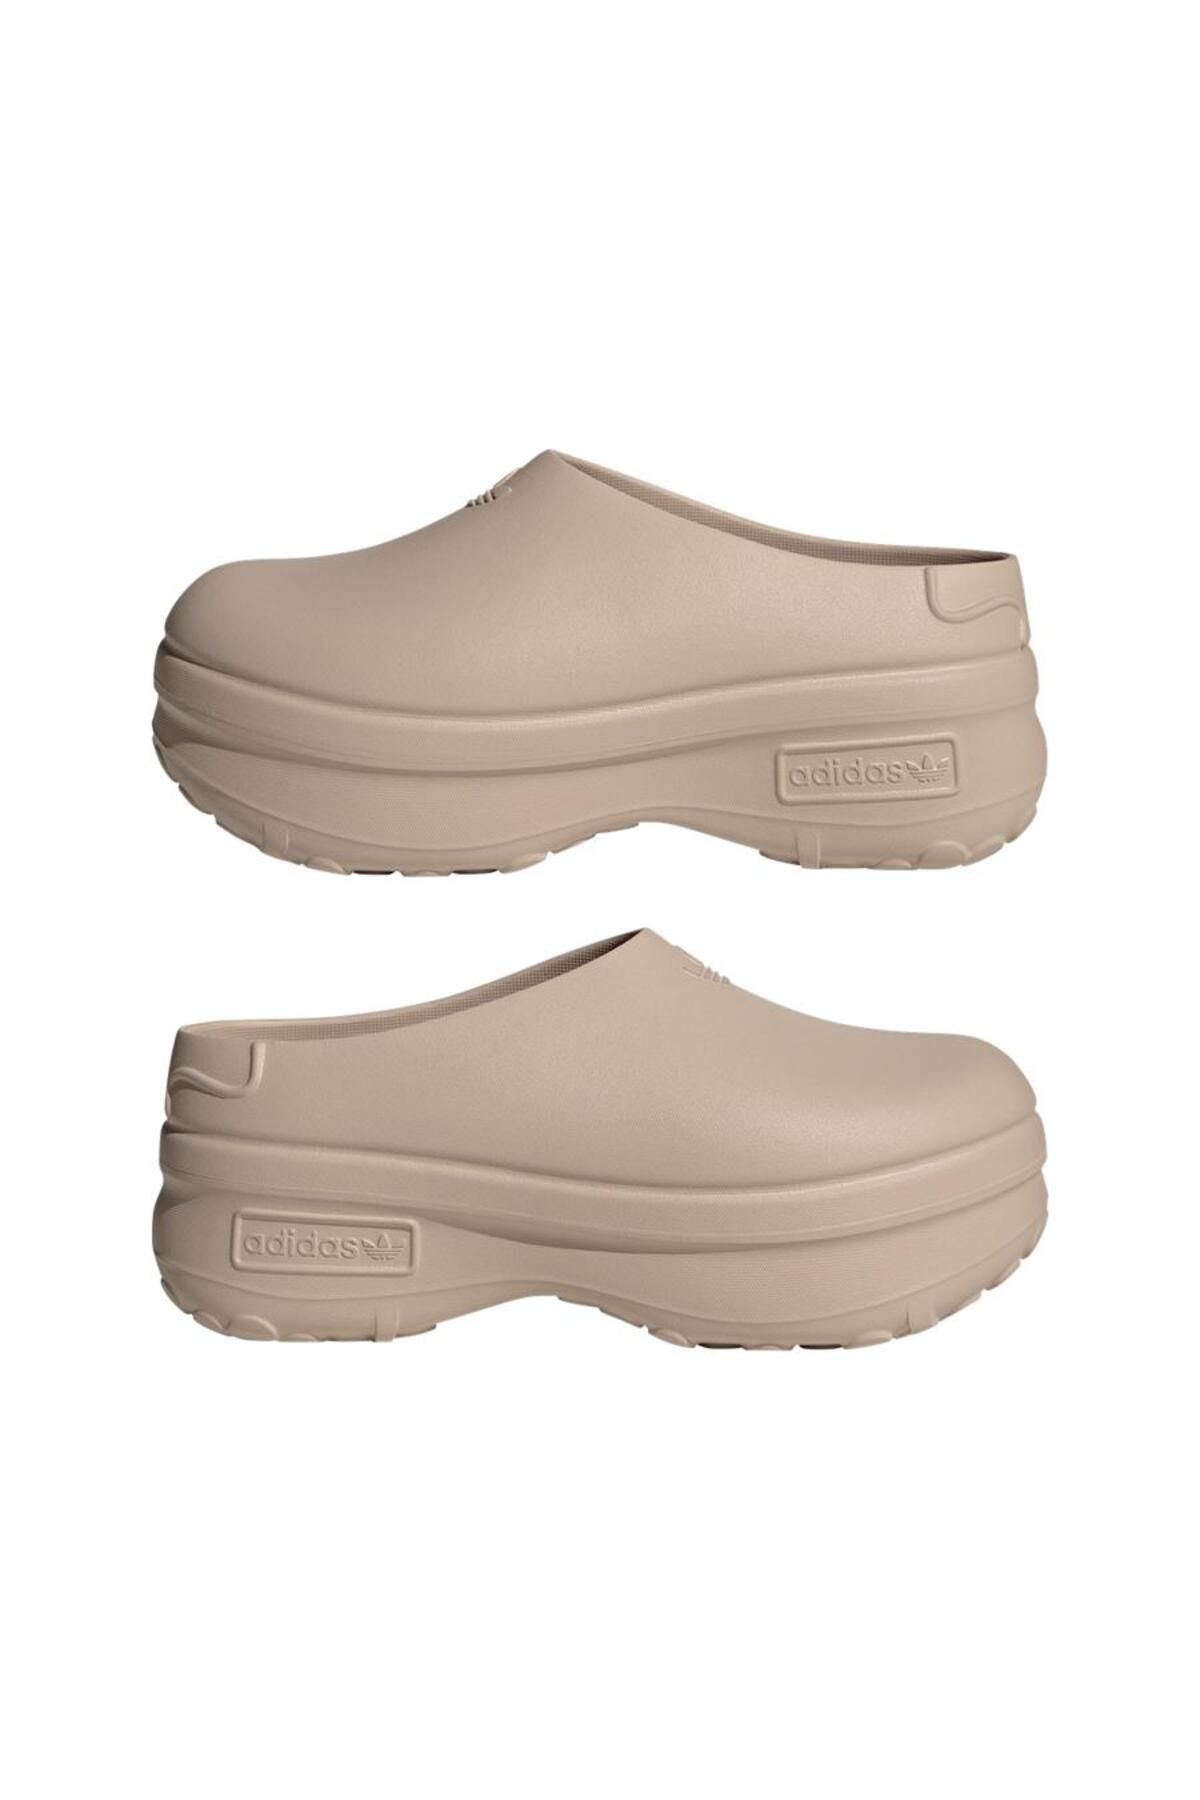 adidas کفش های زن adfom stan mule w IE7052